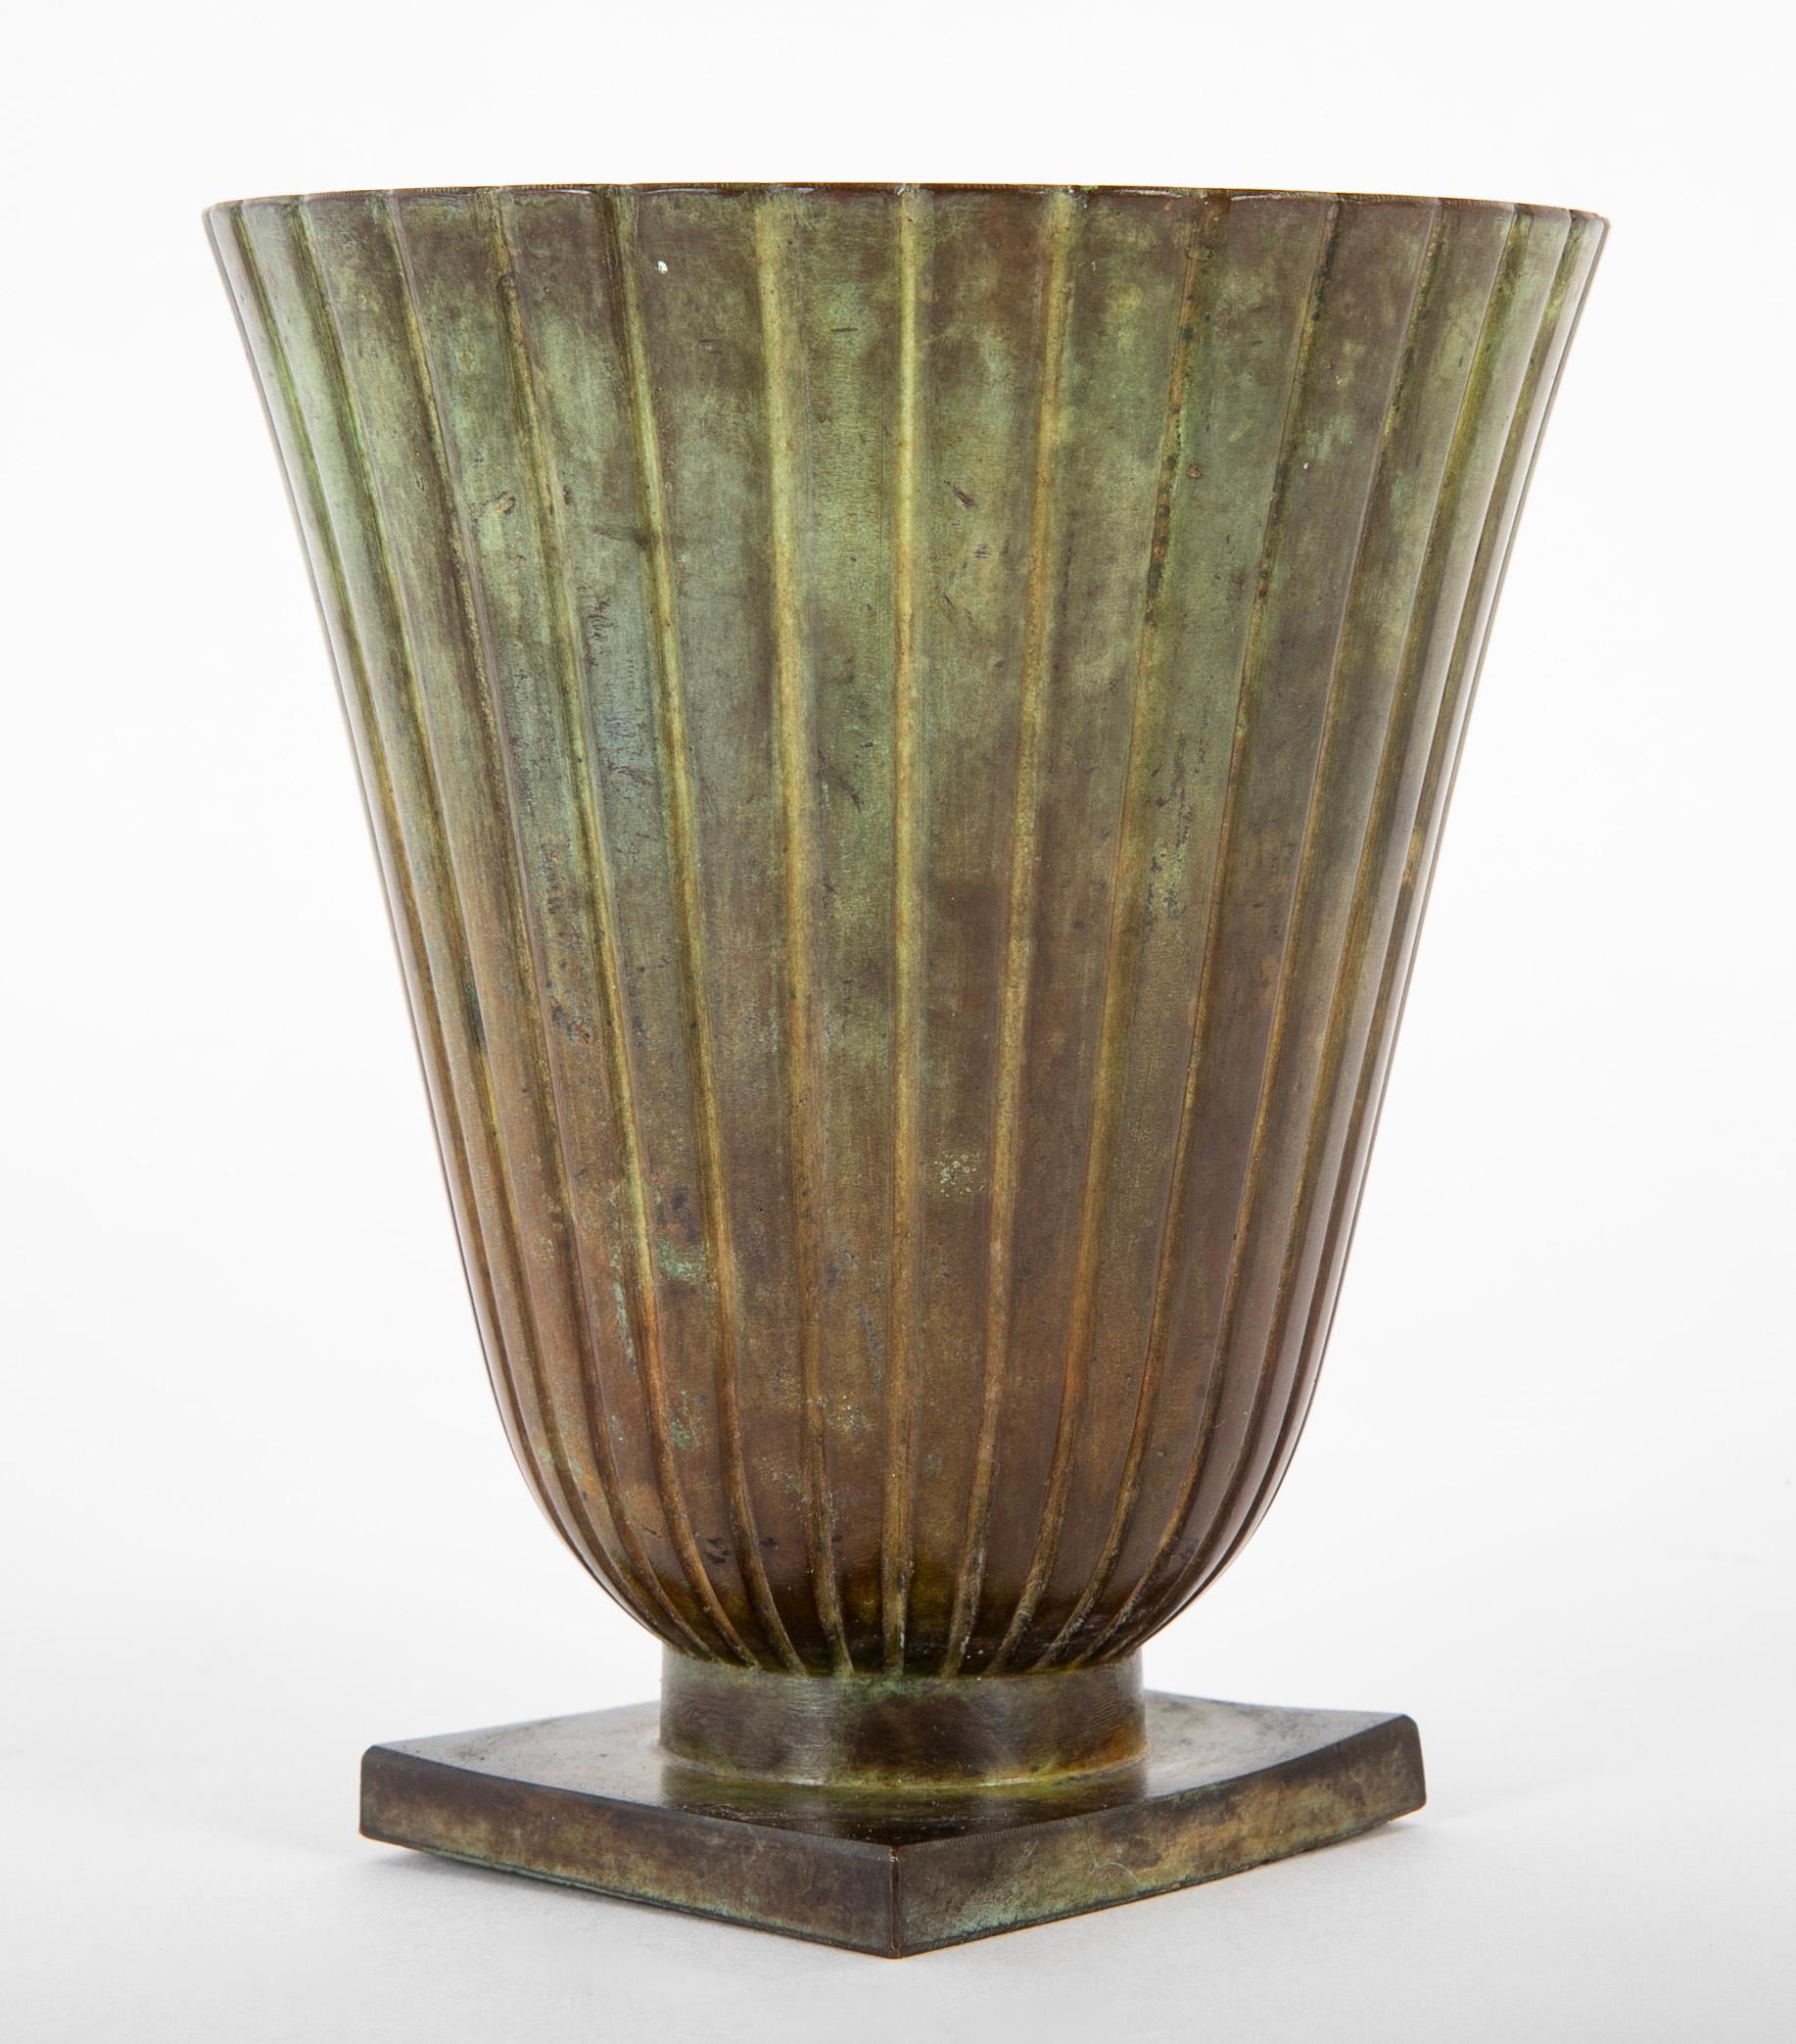 Vase suédois en bronze de forme évasée avec un corps nervuré sur une base carrée.  Estampillé GMB Brous 69.  Vers les années 1930.  Fabriqué par Guldsmedsaktiebolaget, Suède. 